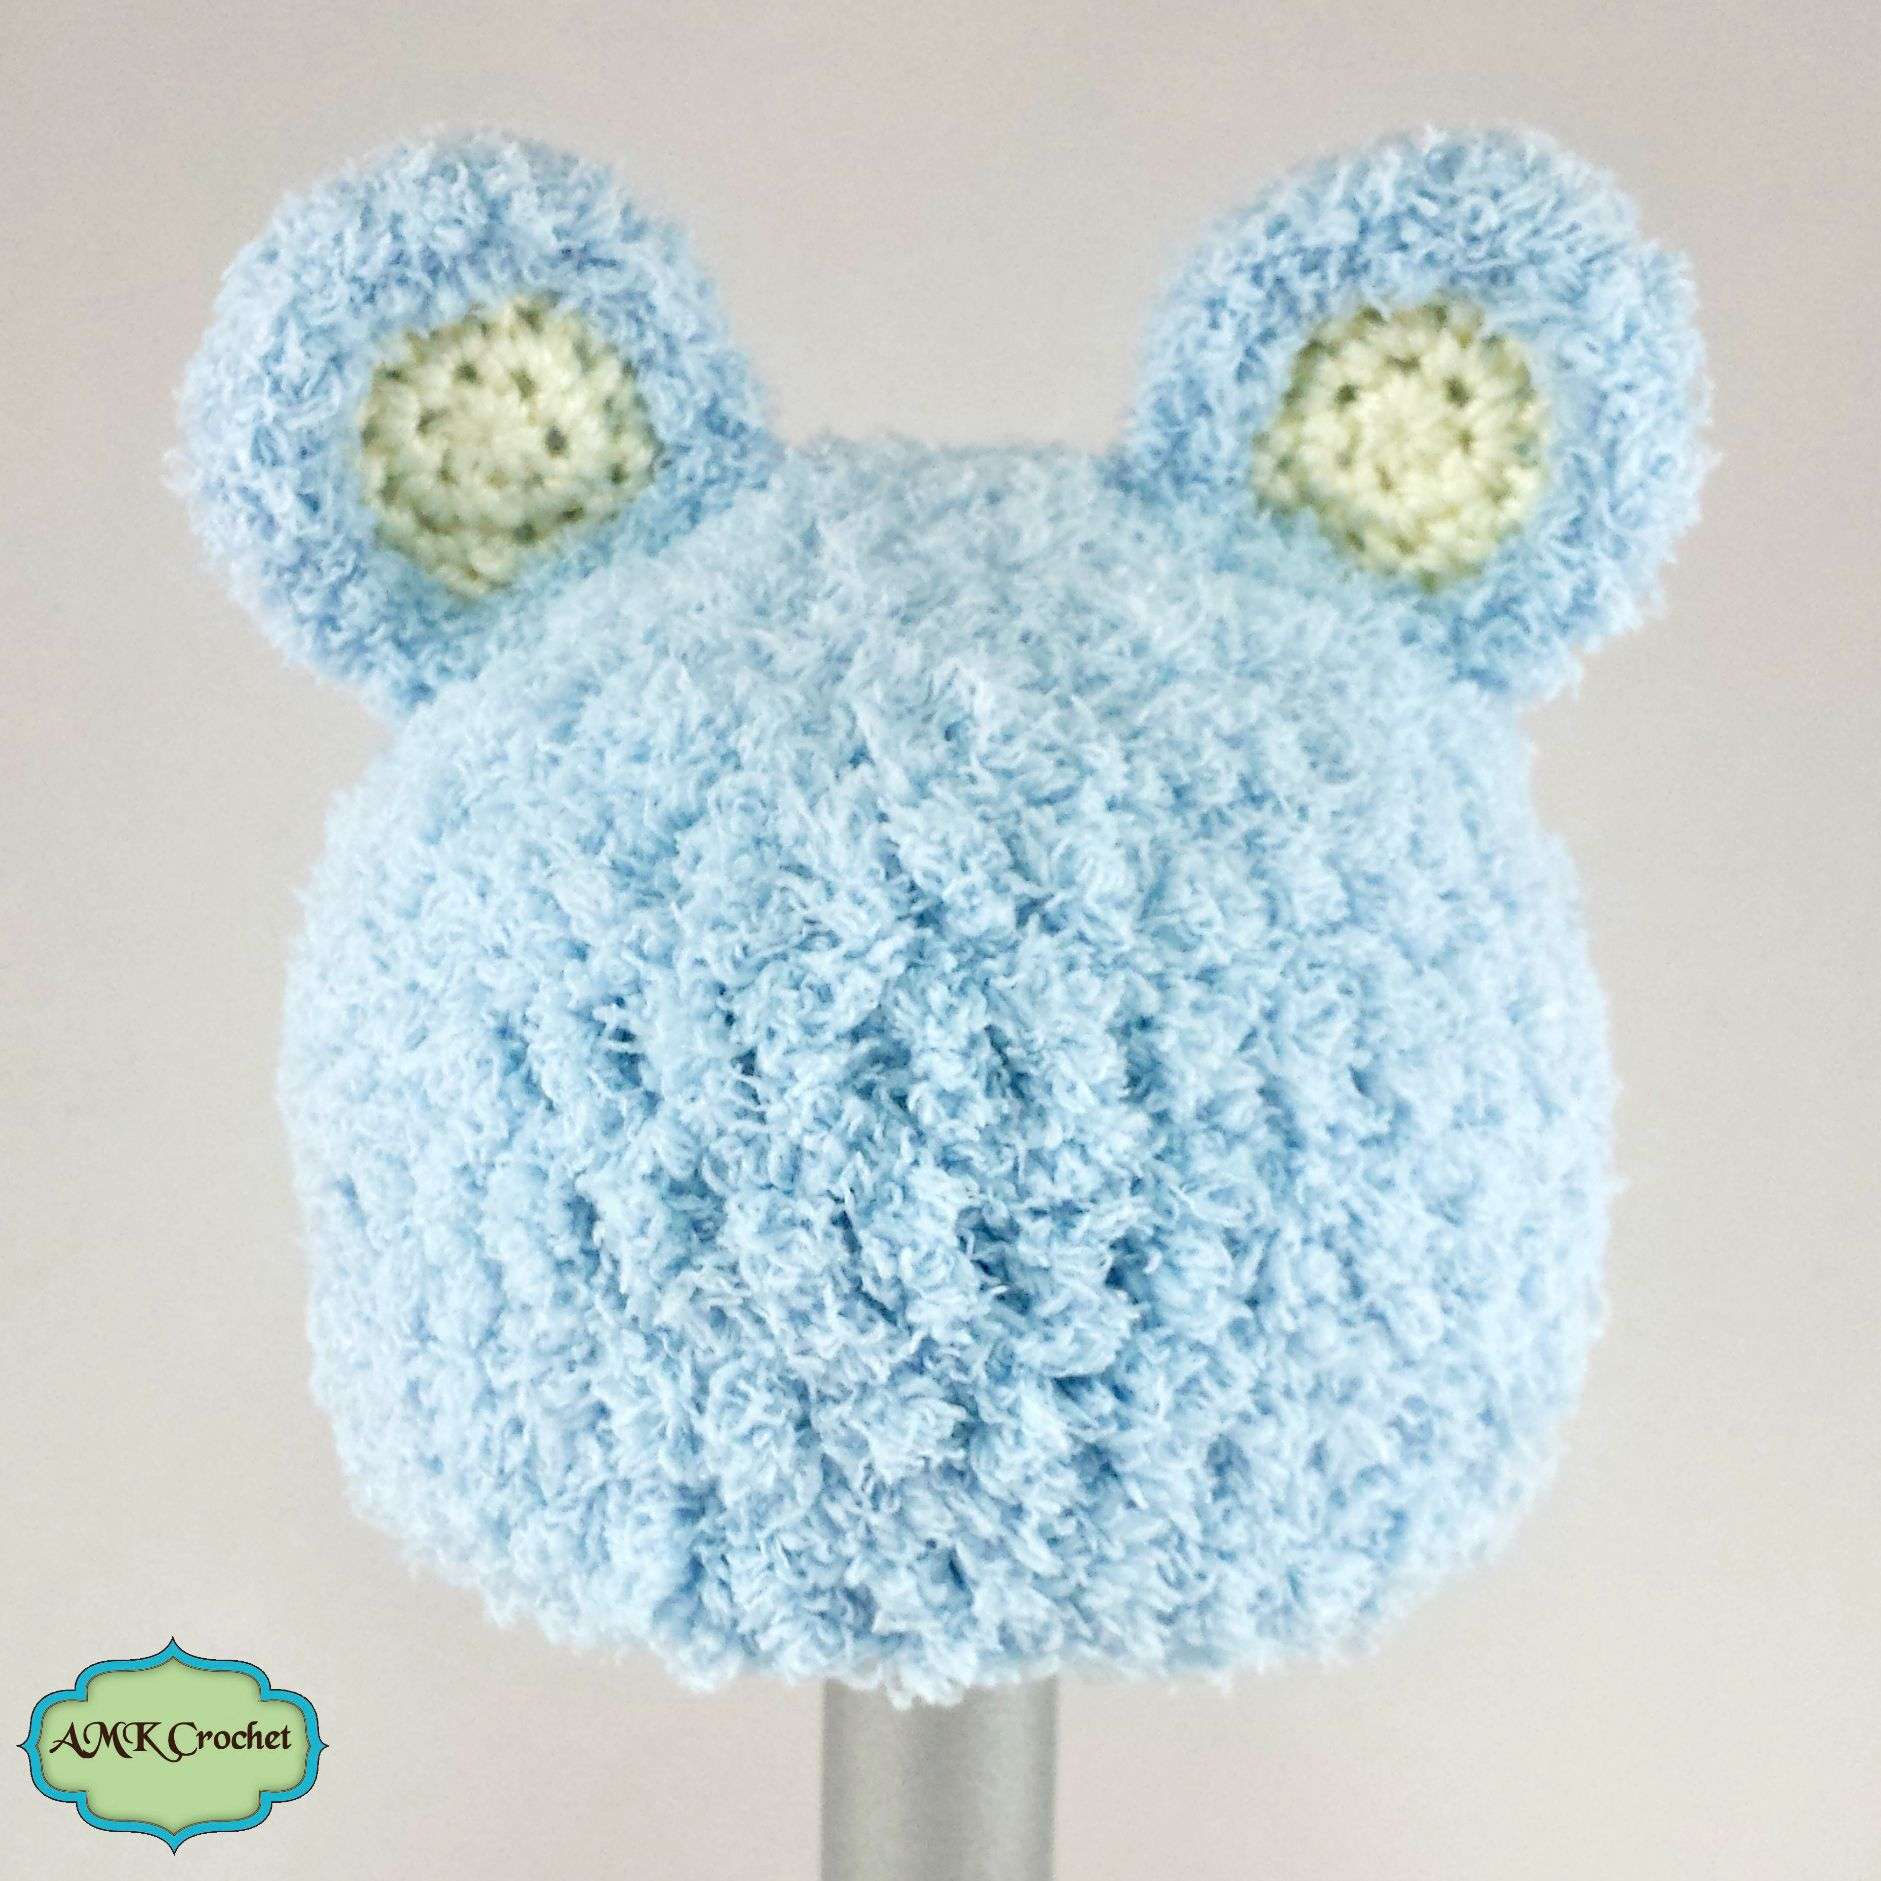 Baby Boy Crochet Hats Free Pattern Free Crochet Newborn Bear Hat Pattern Amk Crochet